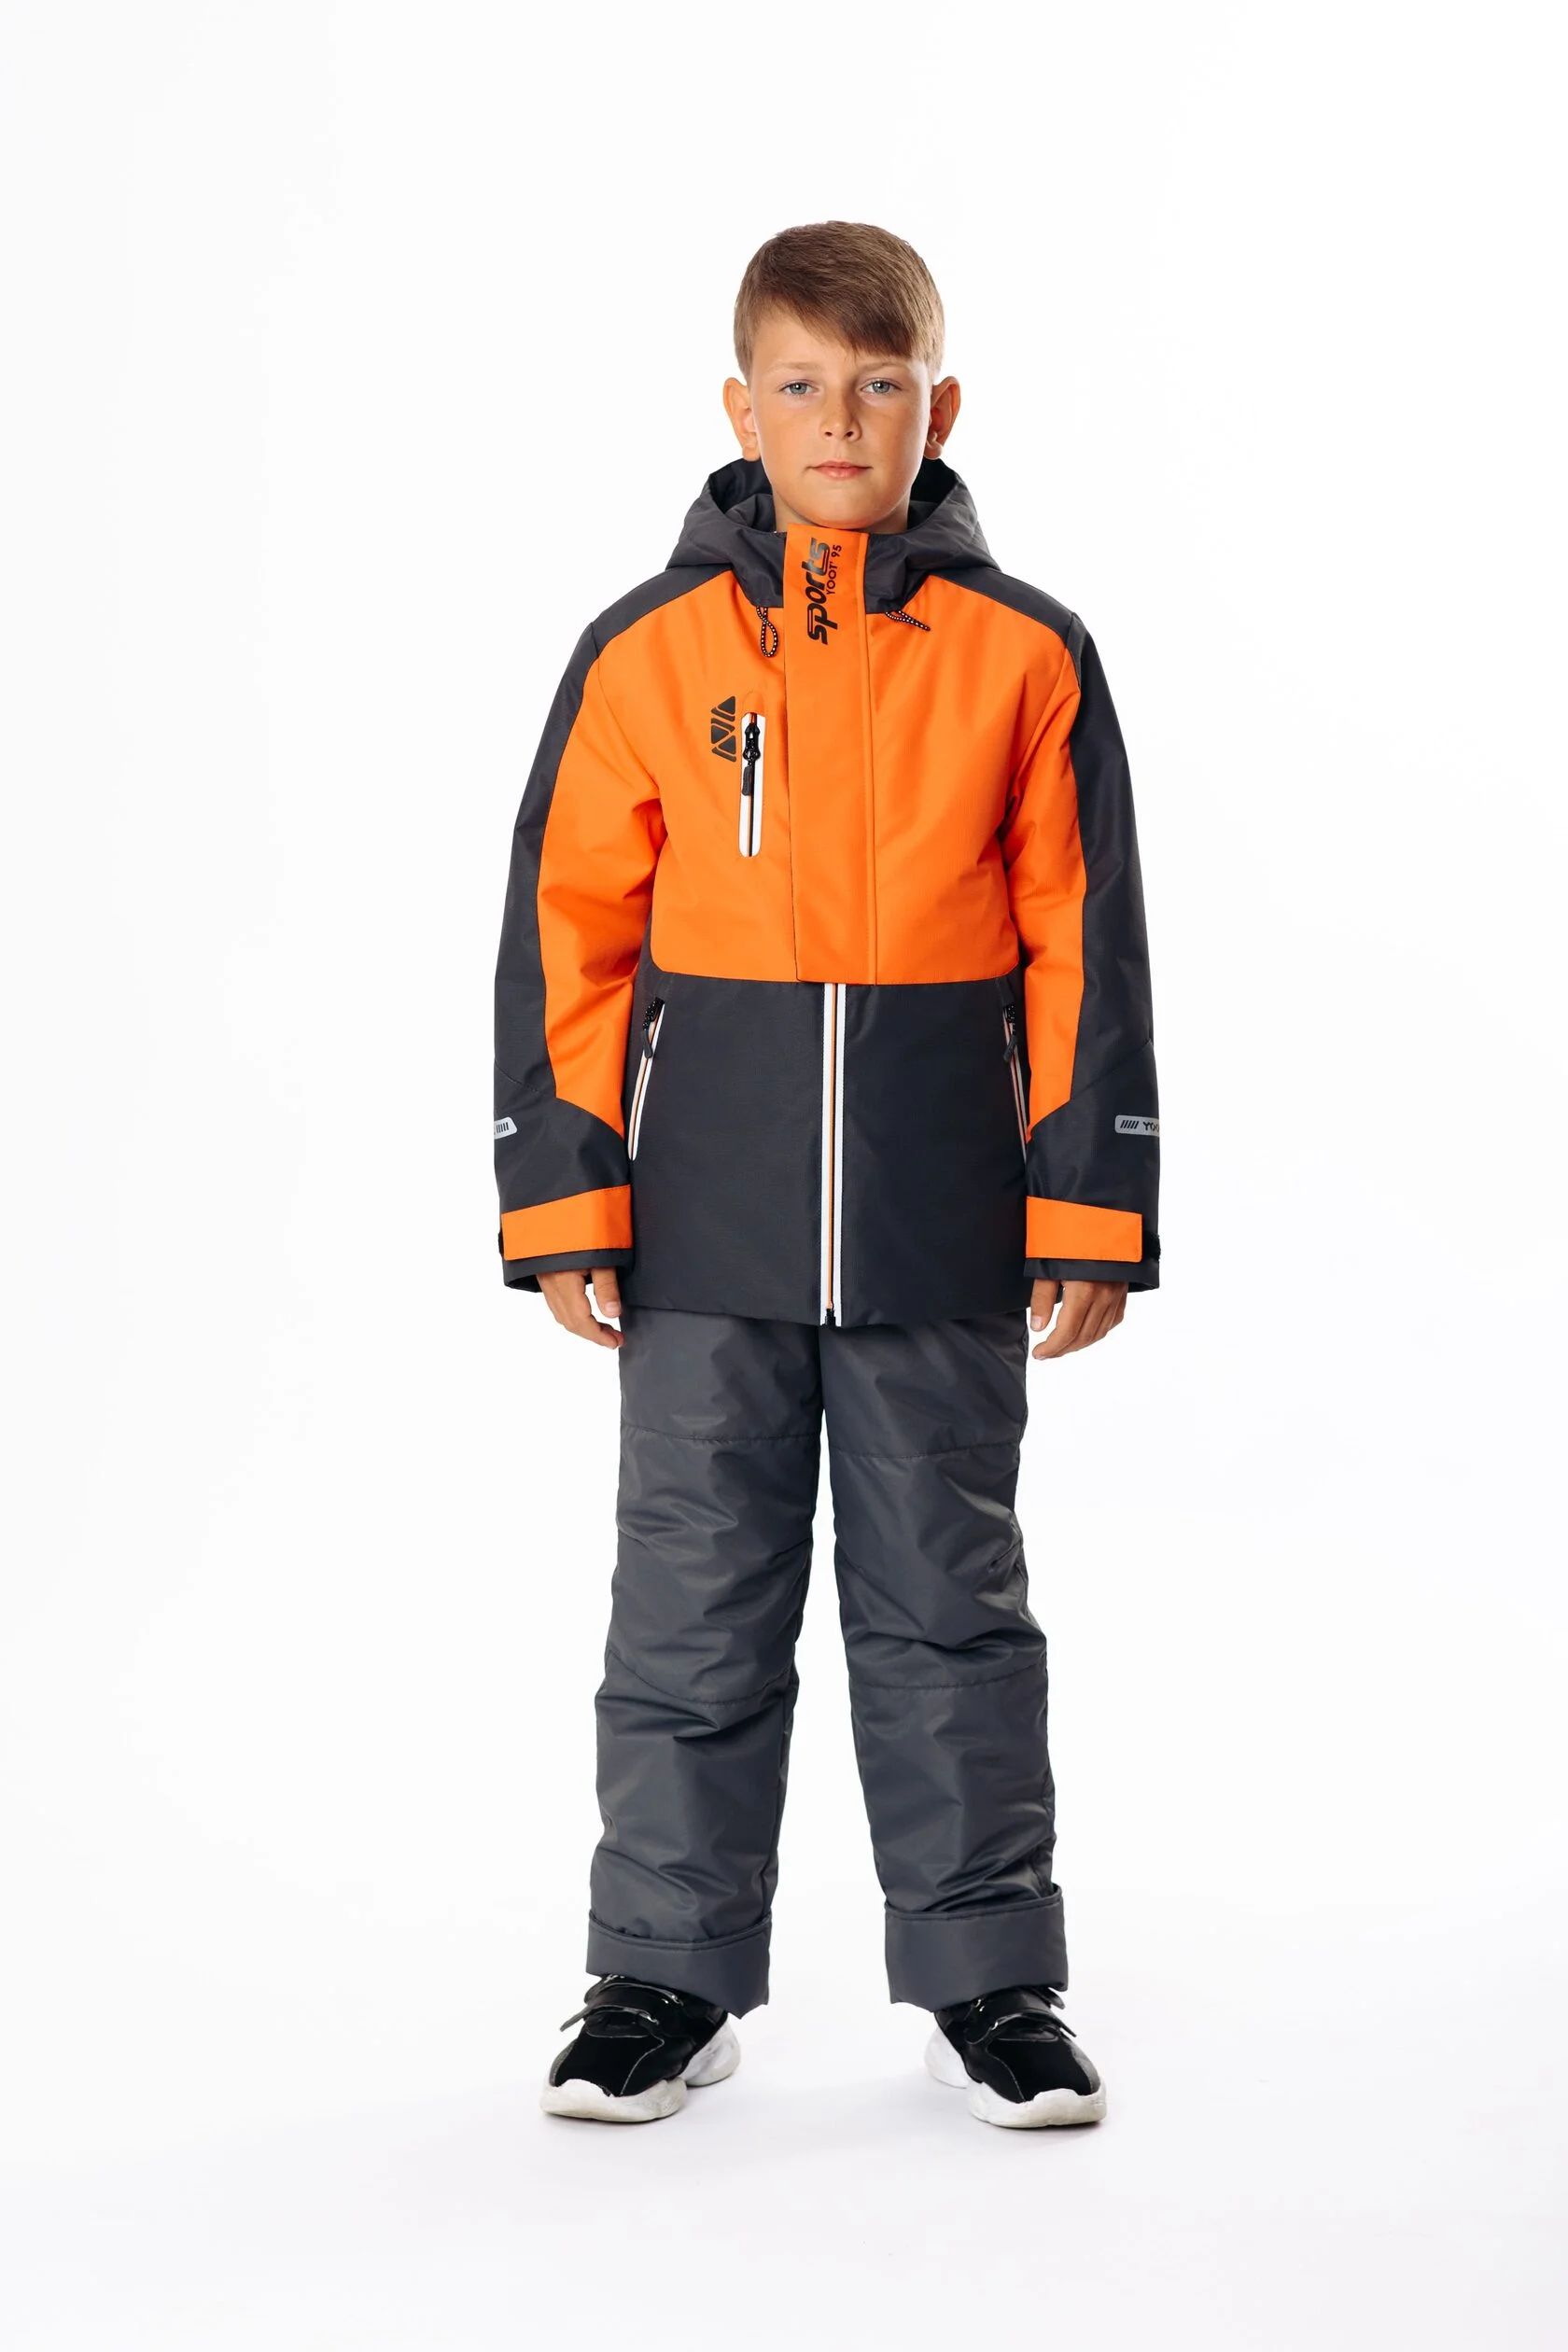 Комплект верхней одежды Yoot 2505 оранжевый, 116 комплект верхней одежды kvartet 661 м оранжевый 98